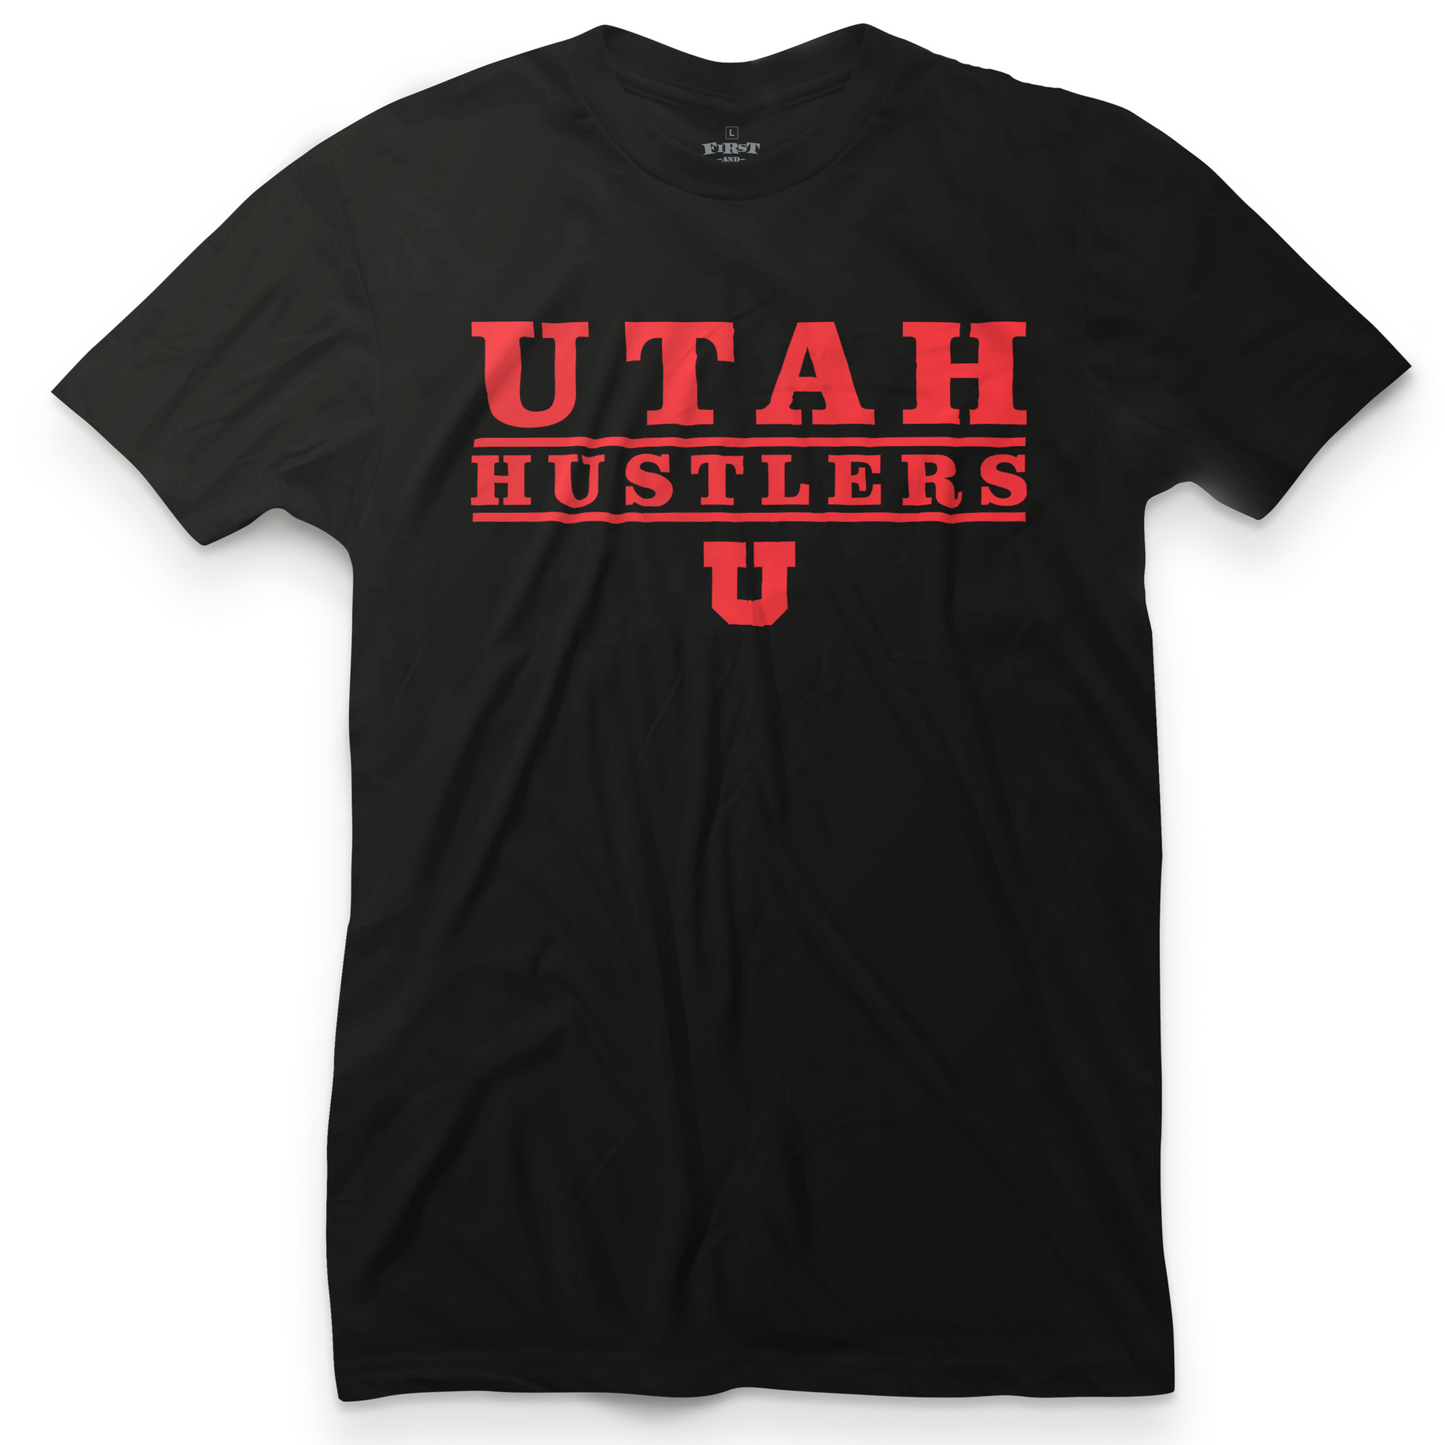 Utah Hustlers U Tee